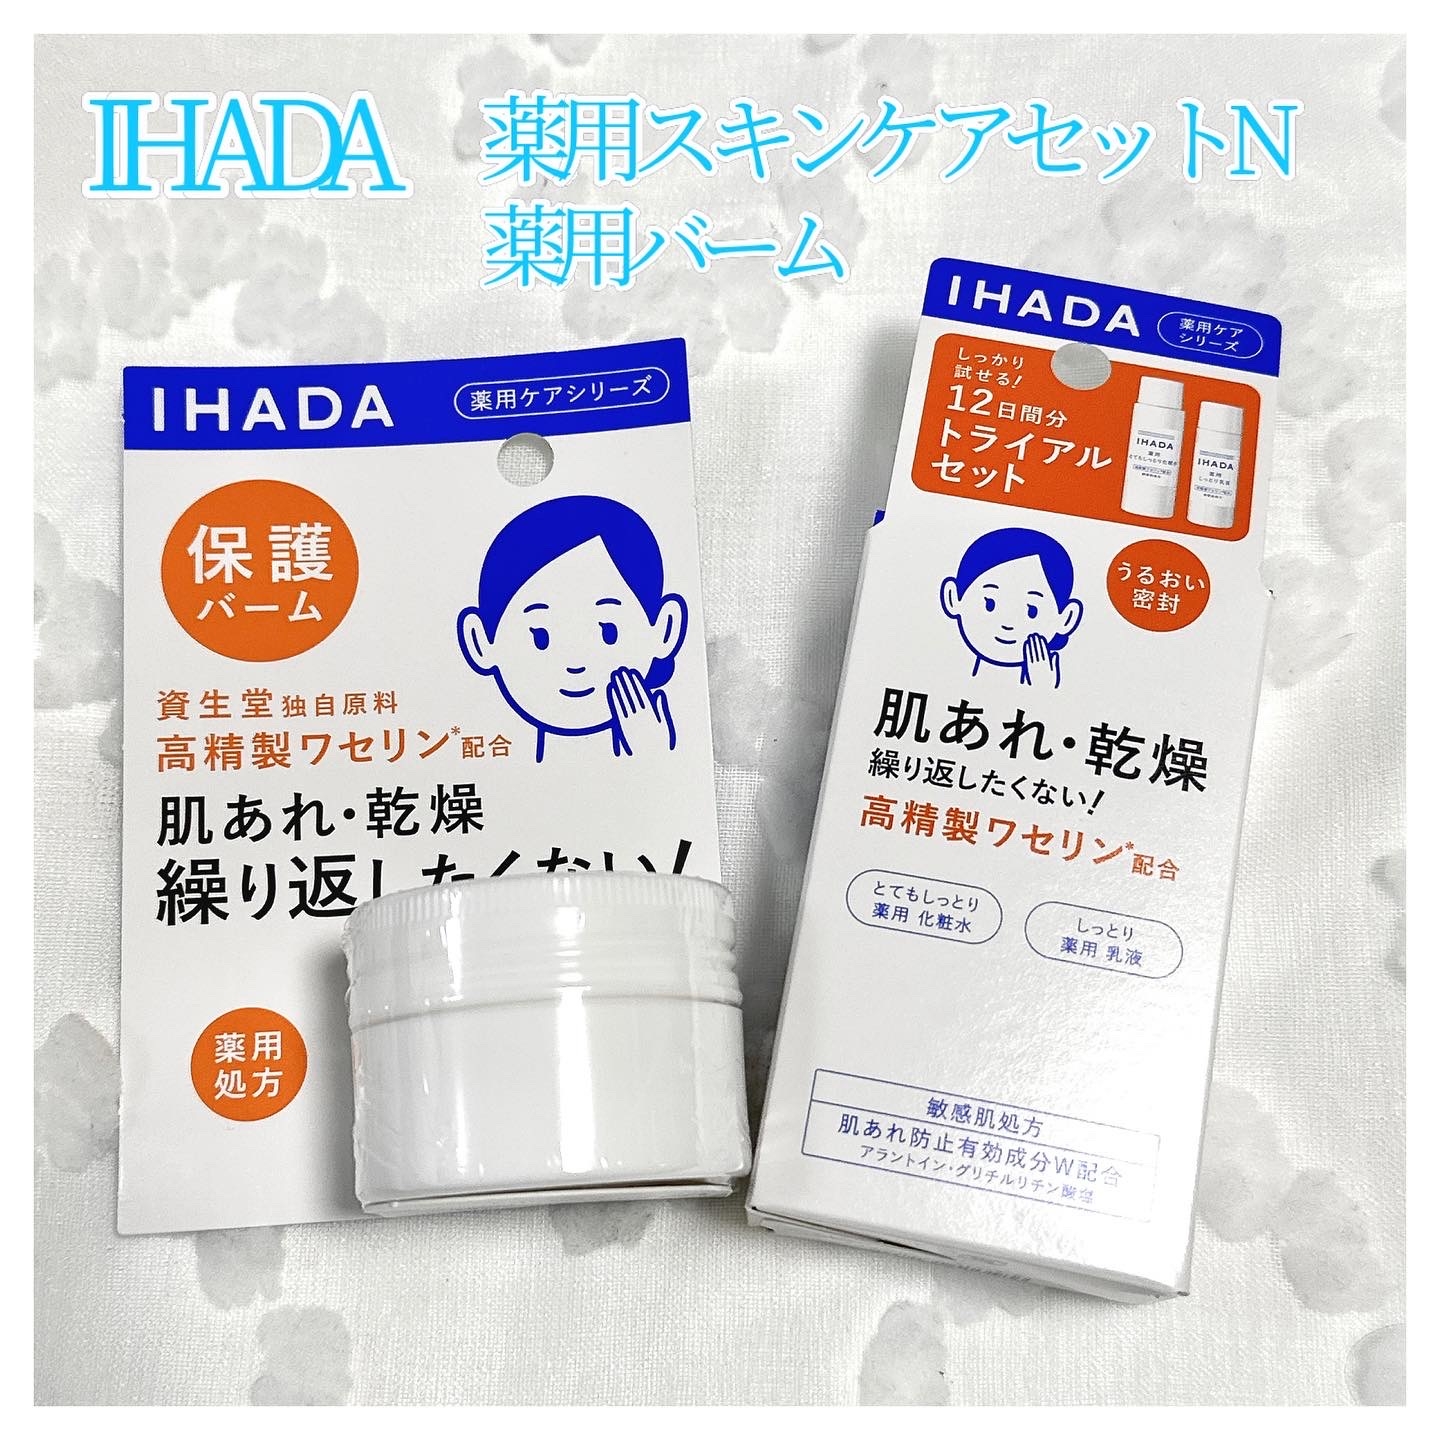 IHADA(イハダ) 薬用バームの良い点・メリットに関するkana_cafe_timeさんの口コミ画像1